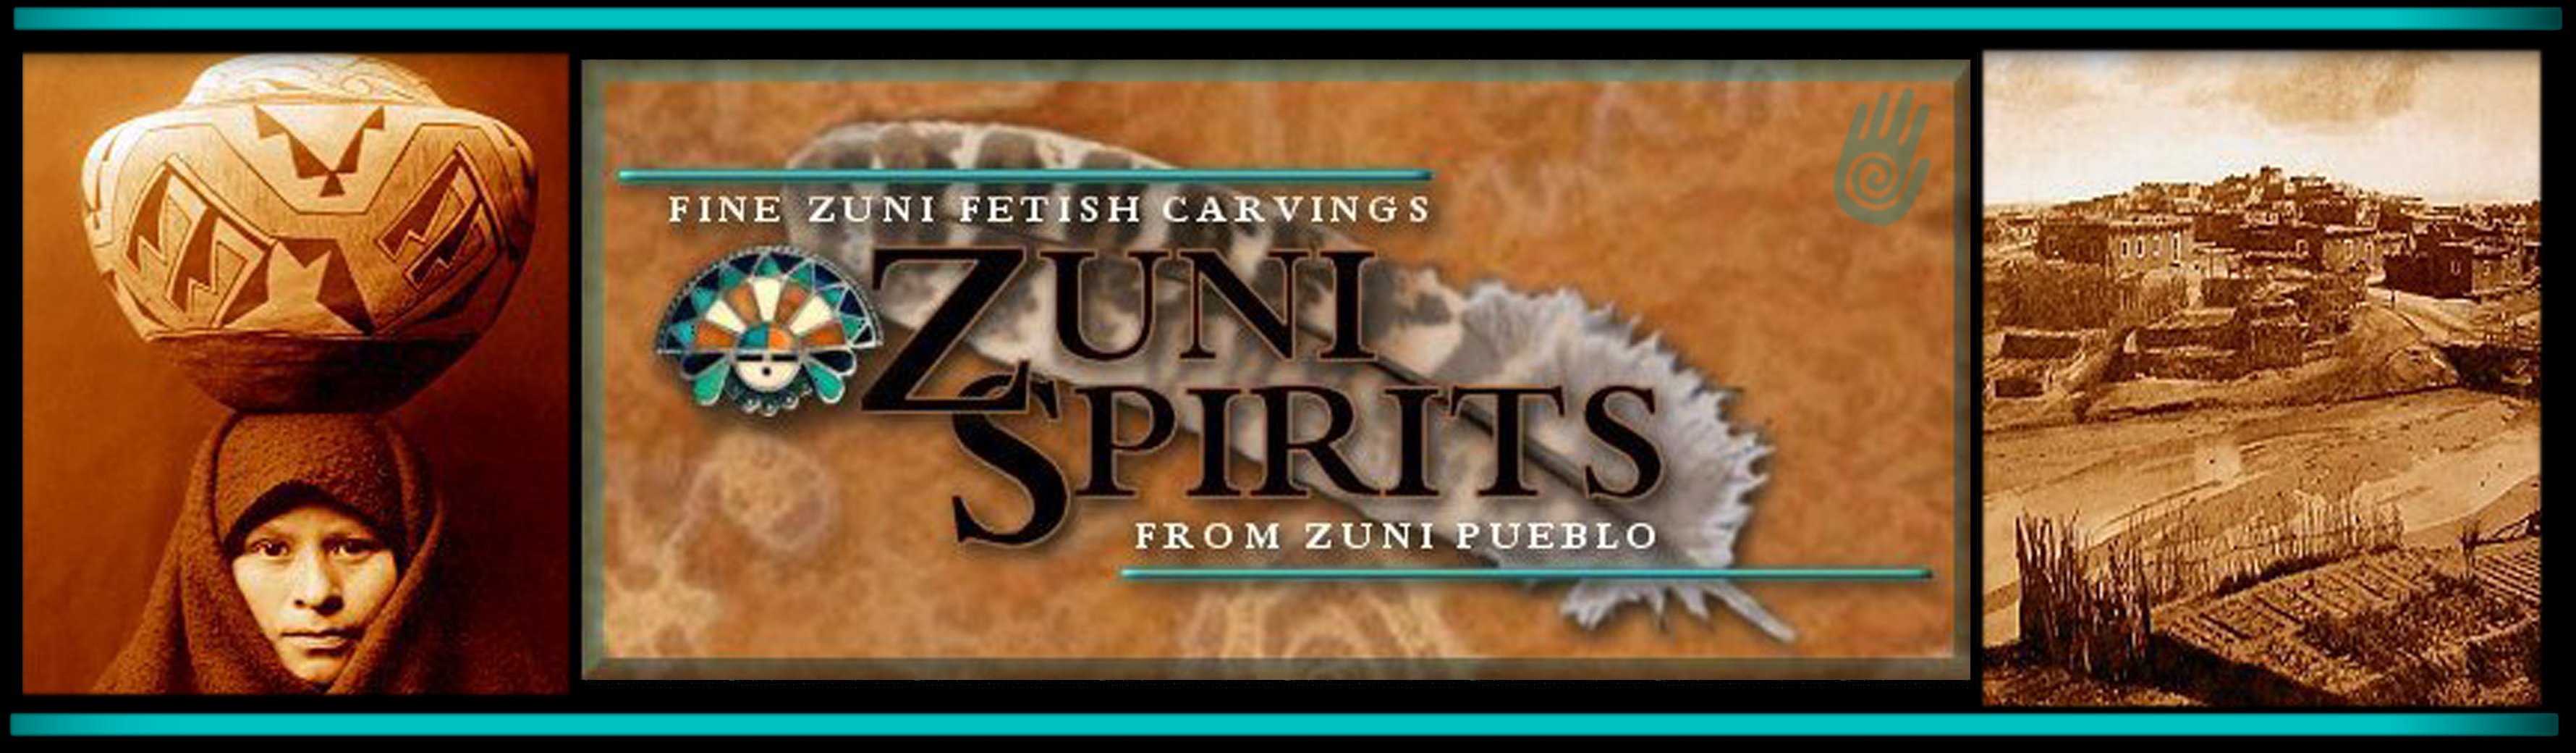 Zuni Spirits - Fine Zuni Fetishes